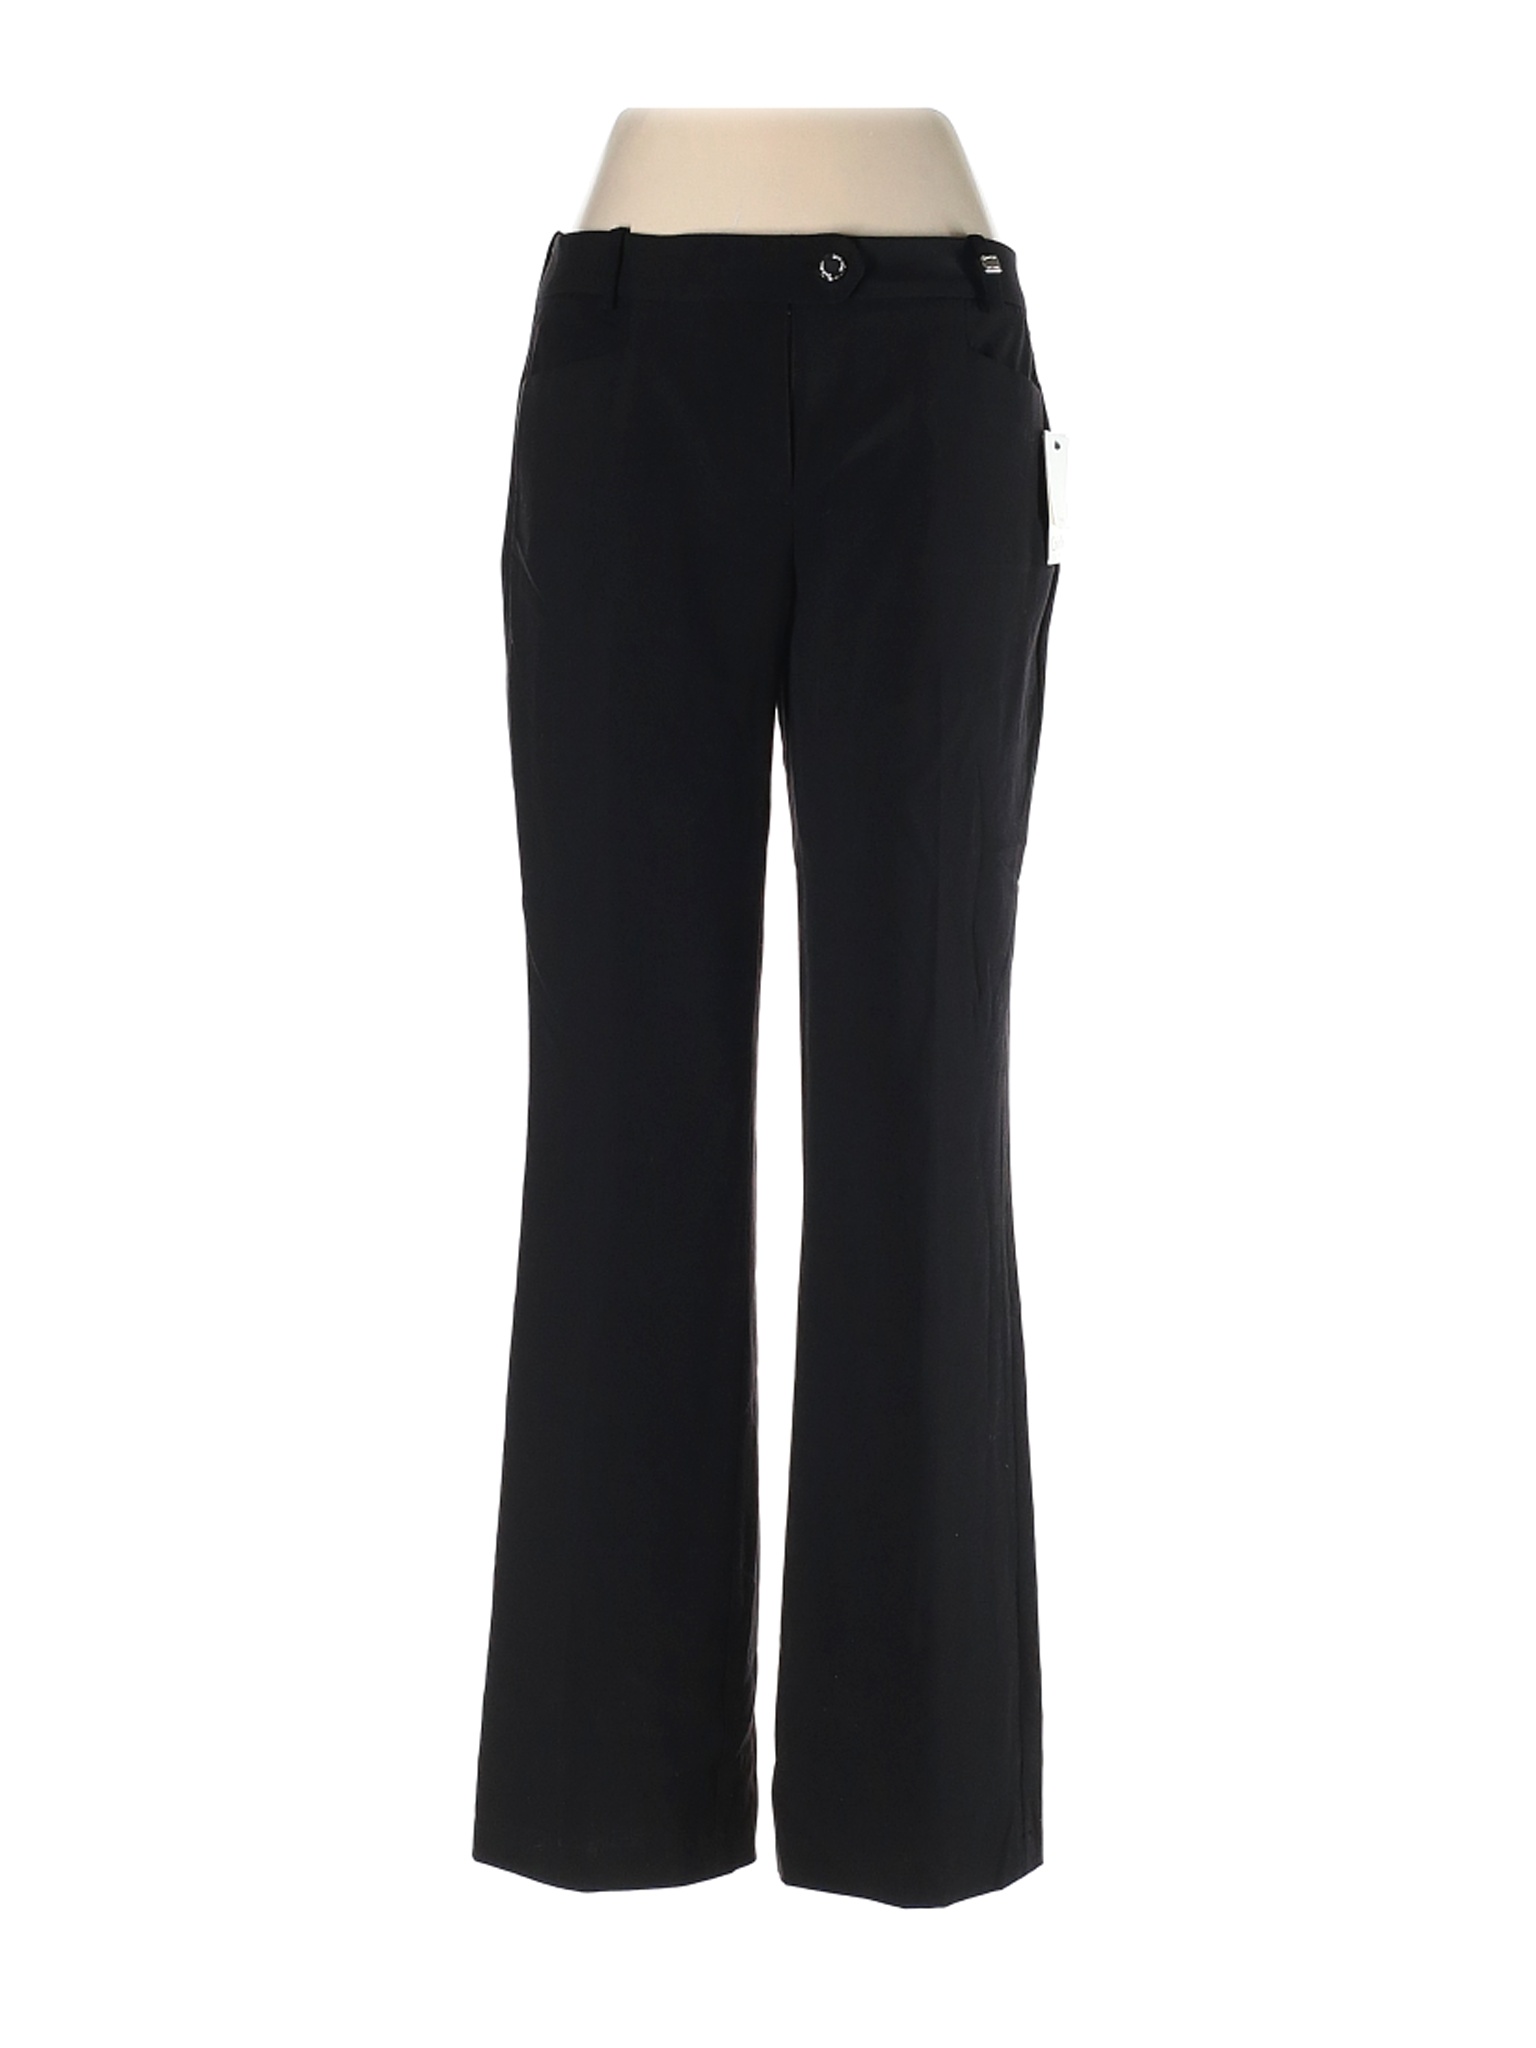 NWT Calvin Klein Women Black Dress Pants 2 | eBay